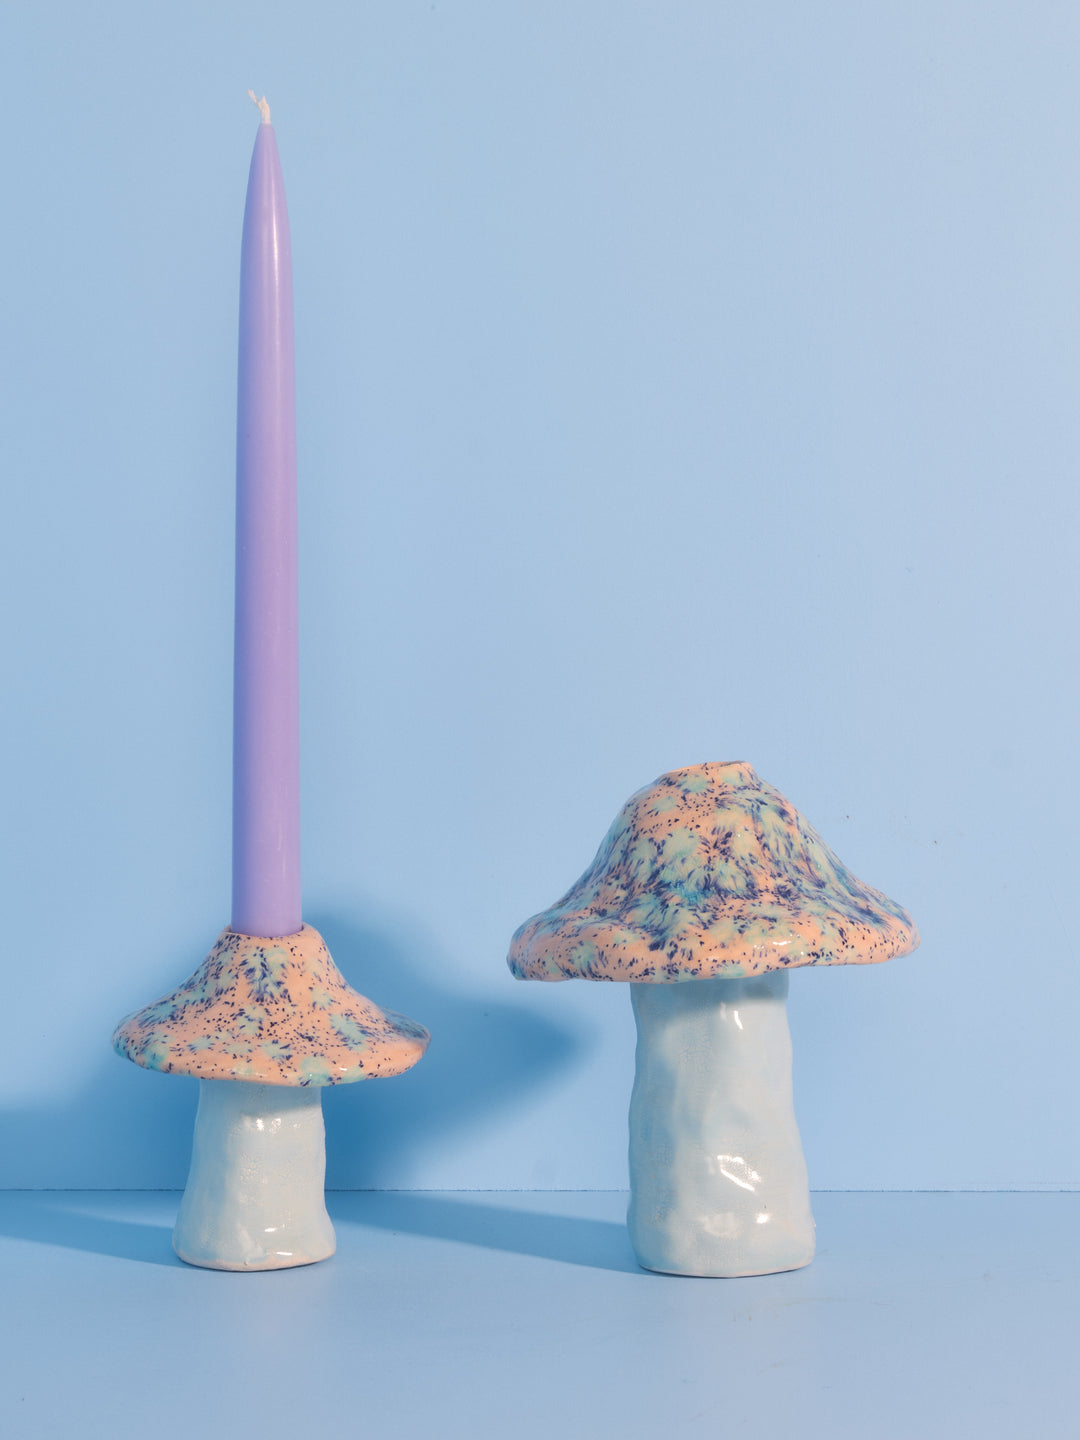 Magic Mushroom – Coming Soon